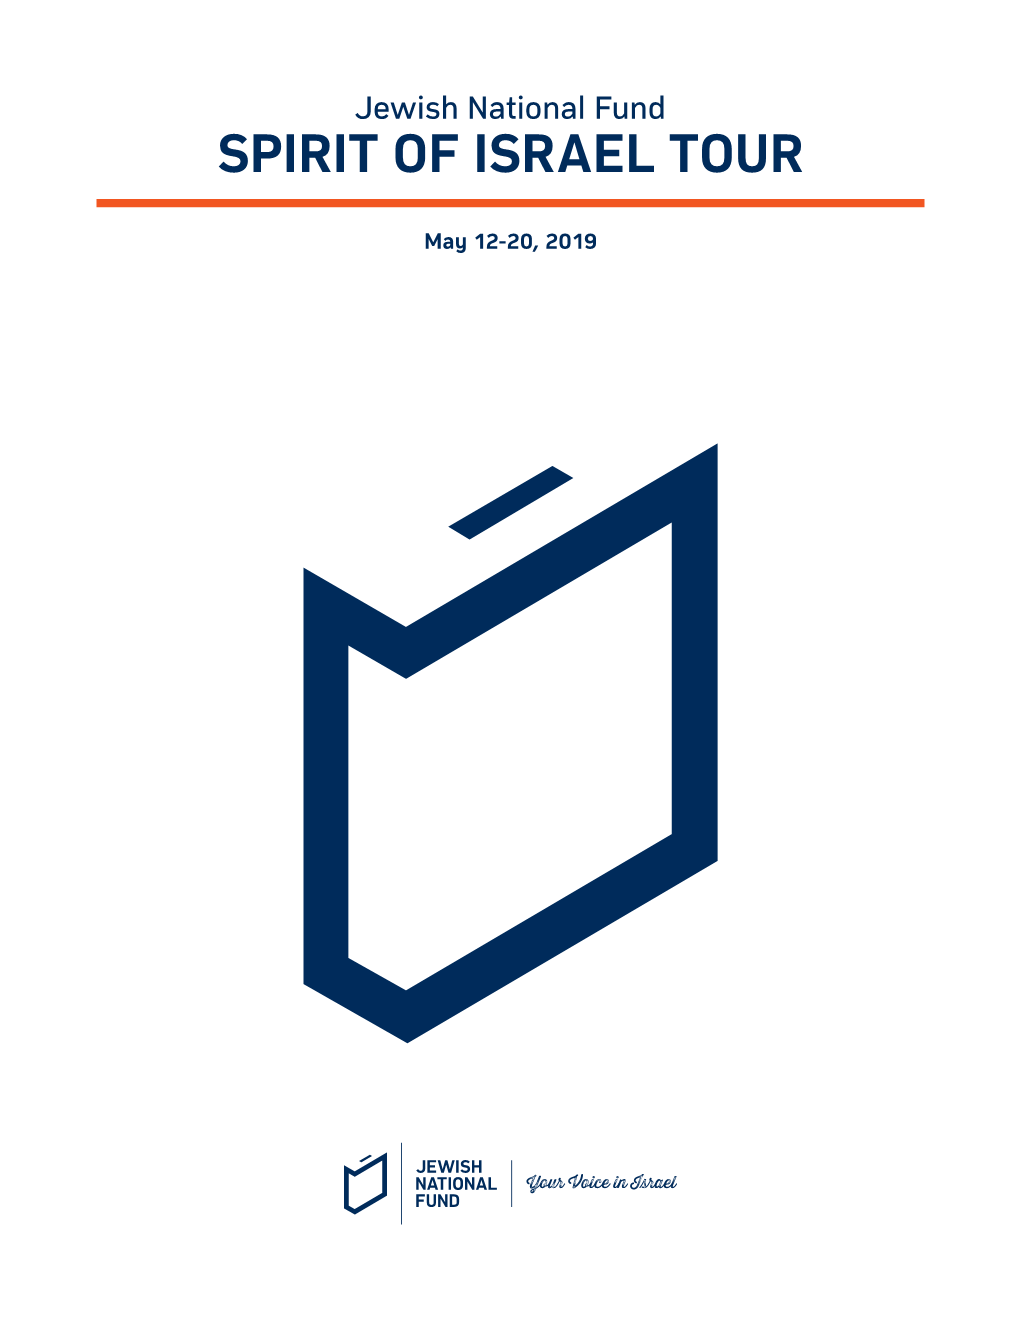 Spirit of Israel Tour